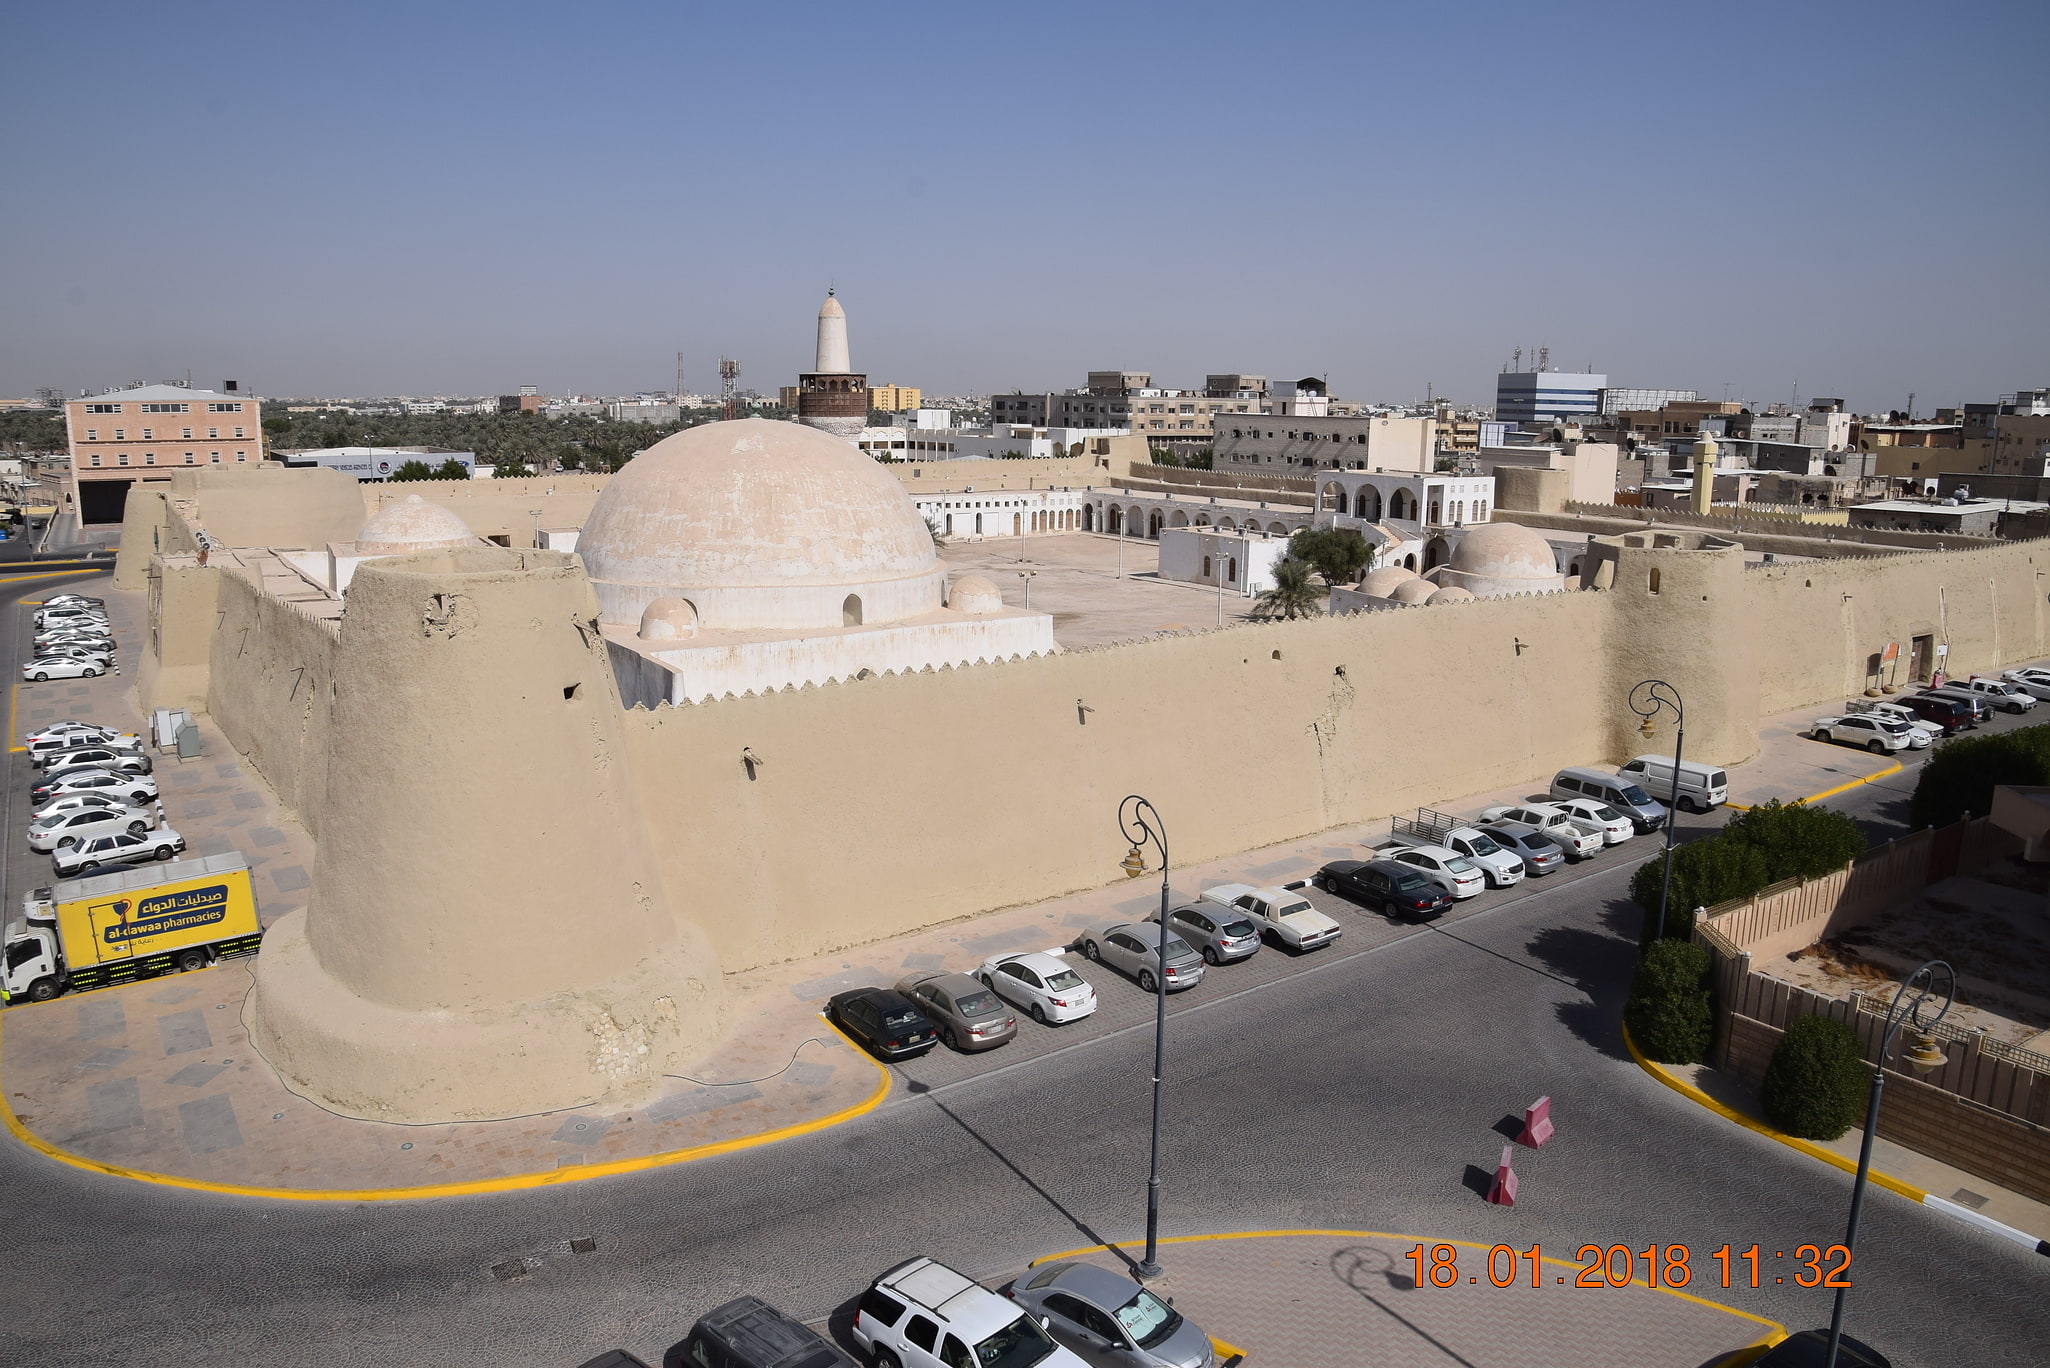 Hofuf, Saudi Arabia